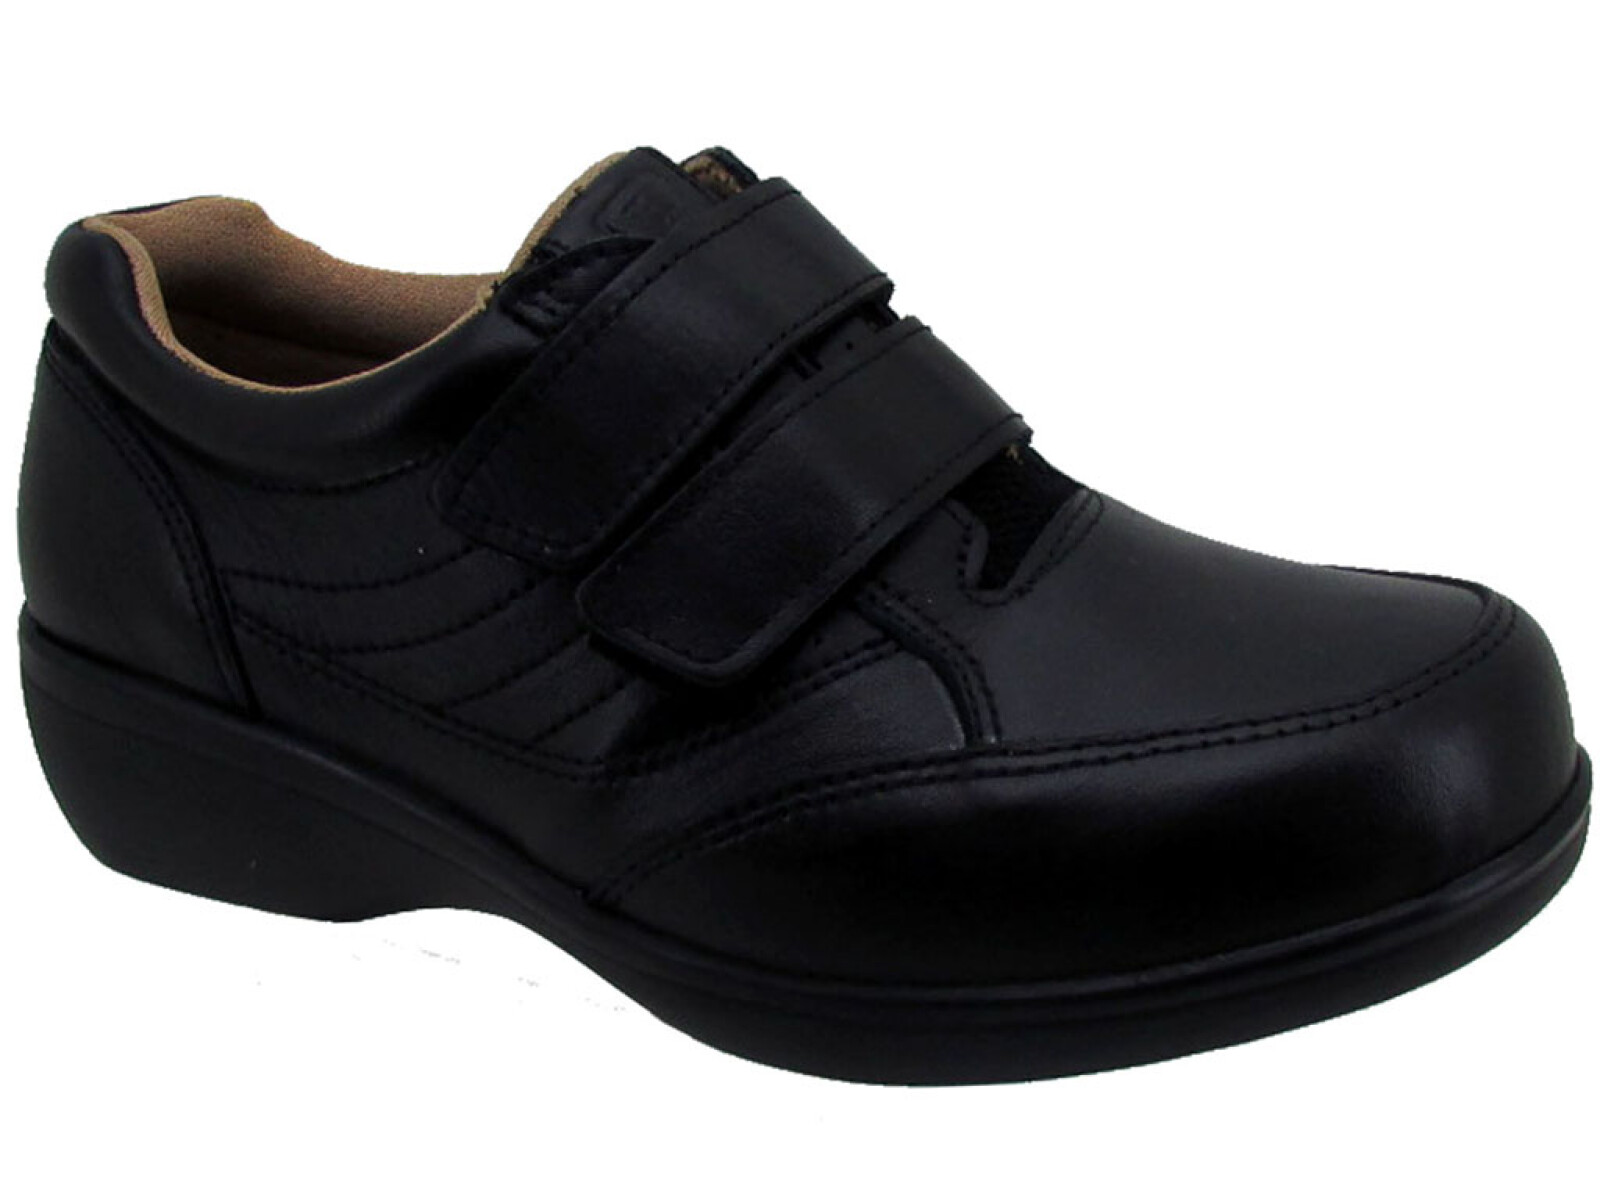 Zapato Casual Diabetic Lombardino - Negro 